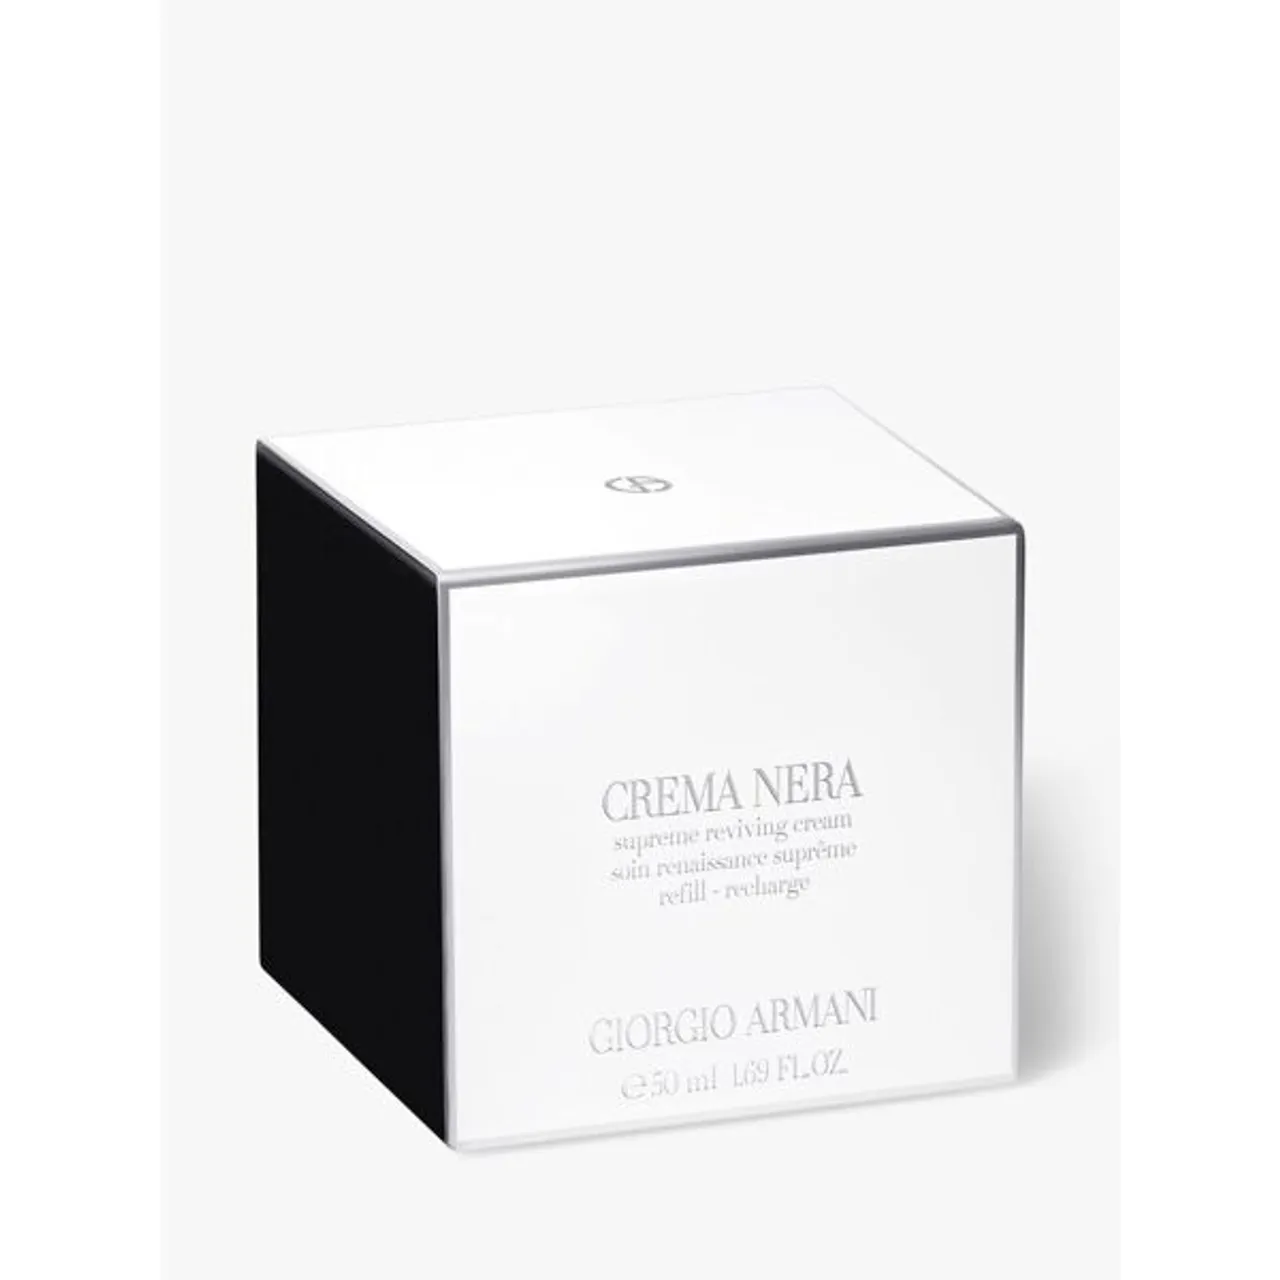 Giorgio Armani Nera Supreme Reviving Light Cream, Refill, 50ml - Unisex - Size: 50ml